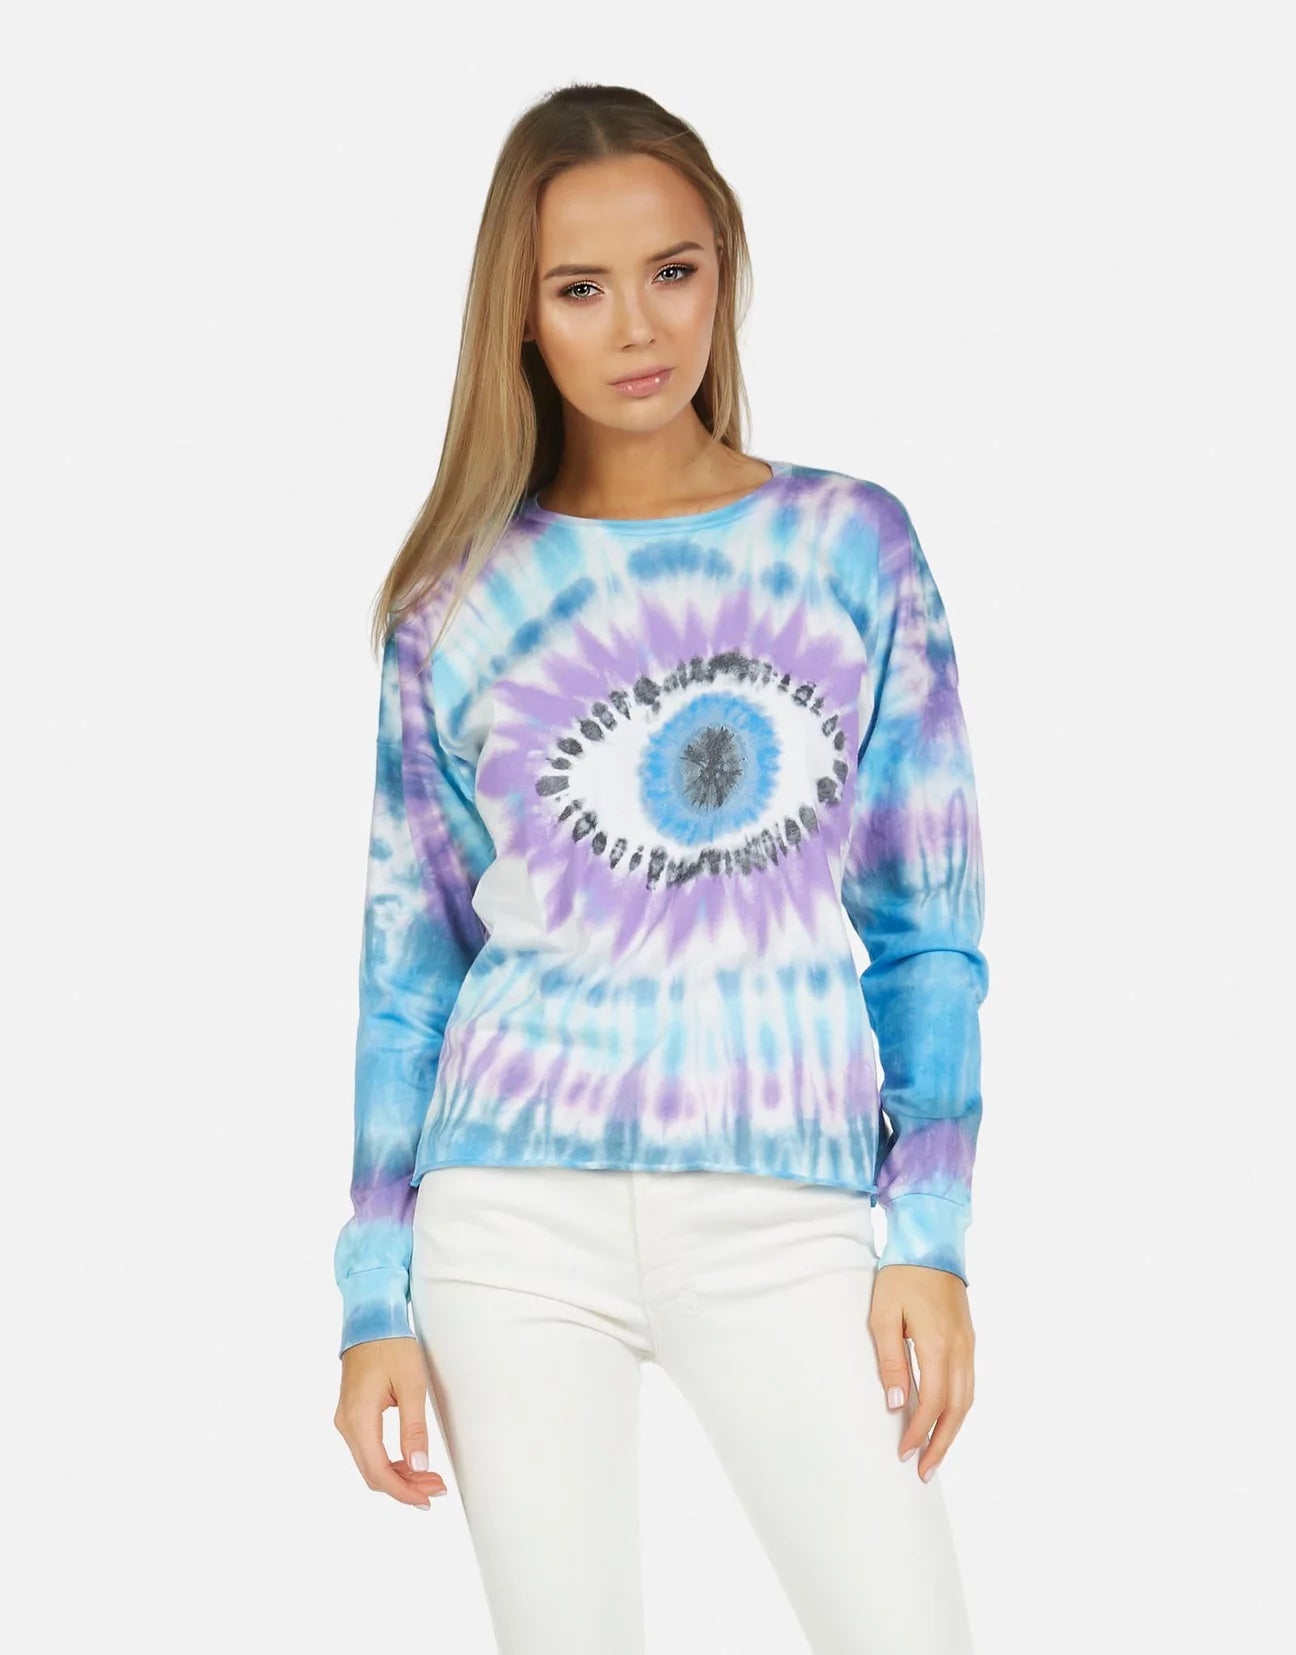 Shop Lauren Moshi Luella Tie Dye Eye Sweater - Premium Long Sleeved Top from Lauren Moshi Online now at Spoiled Brat 